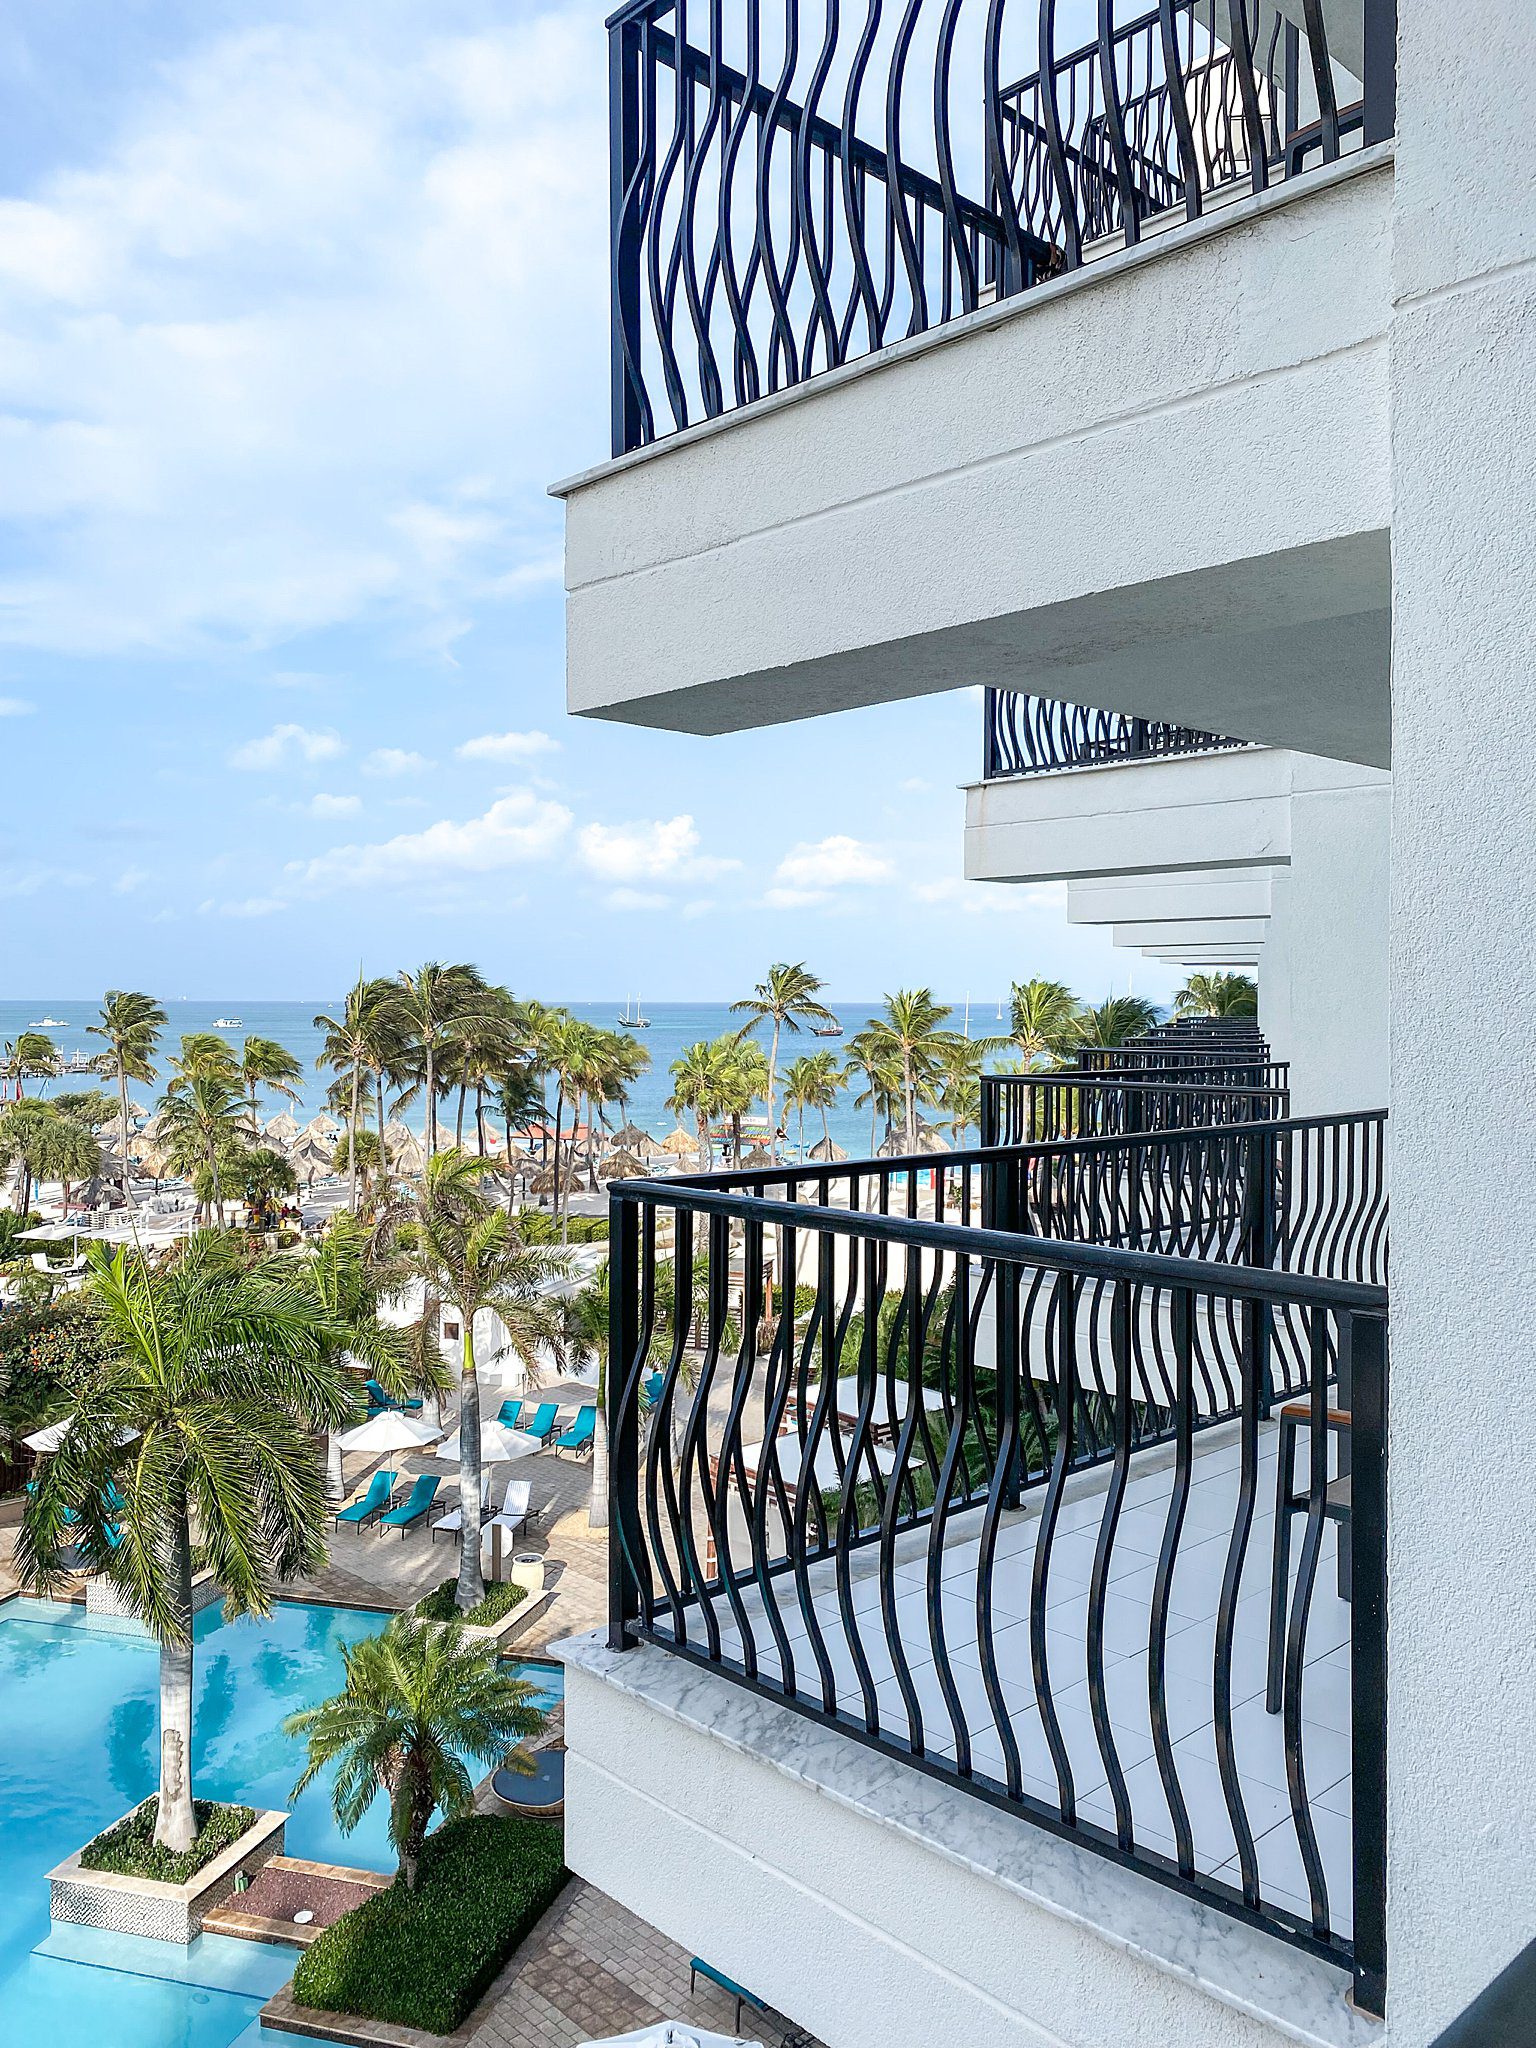 View from Aruba Marriott Room